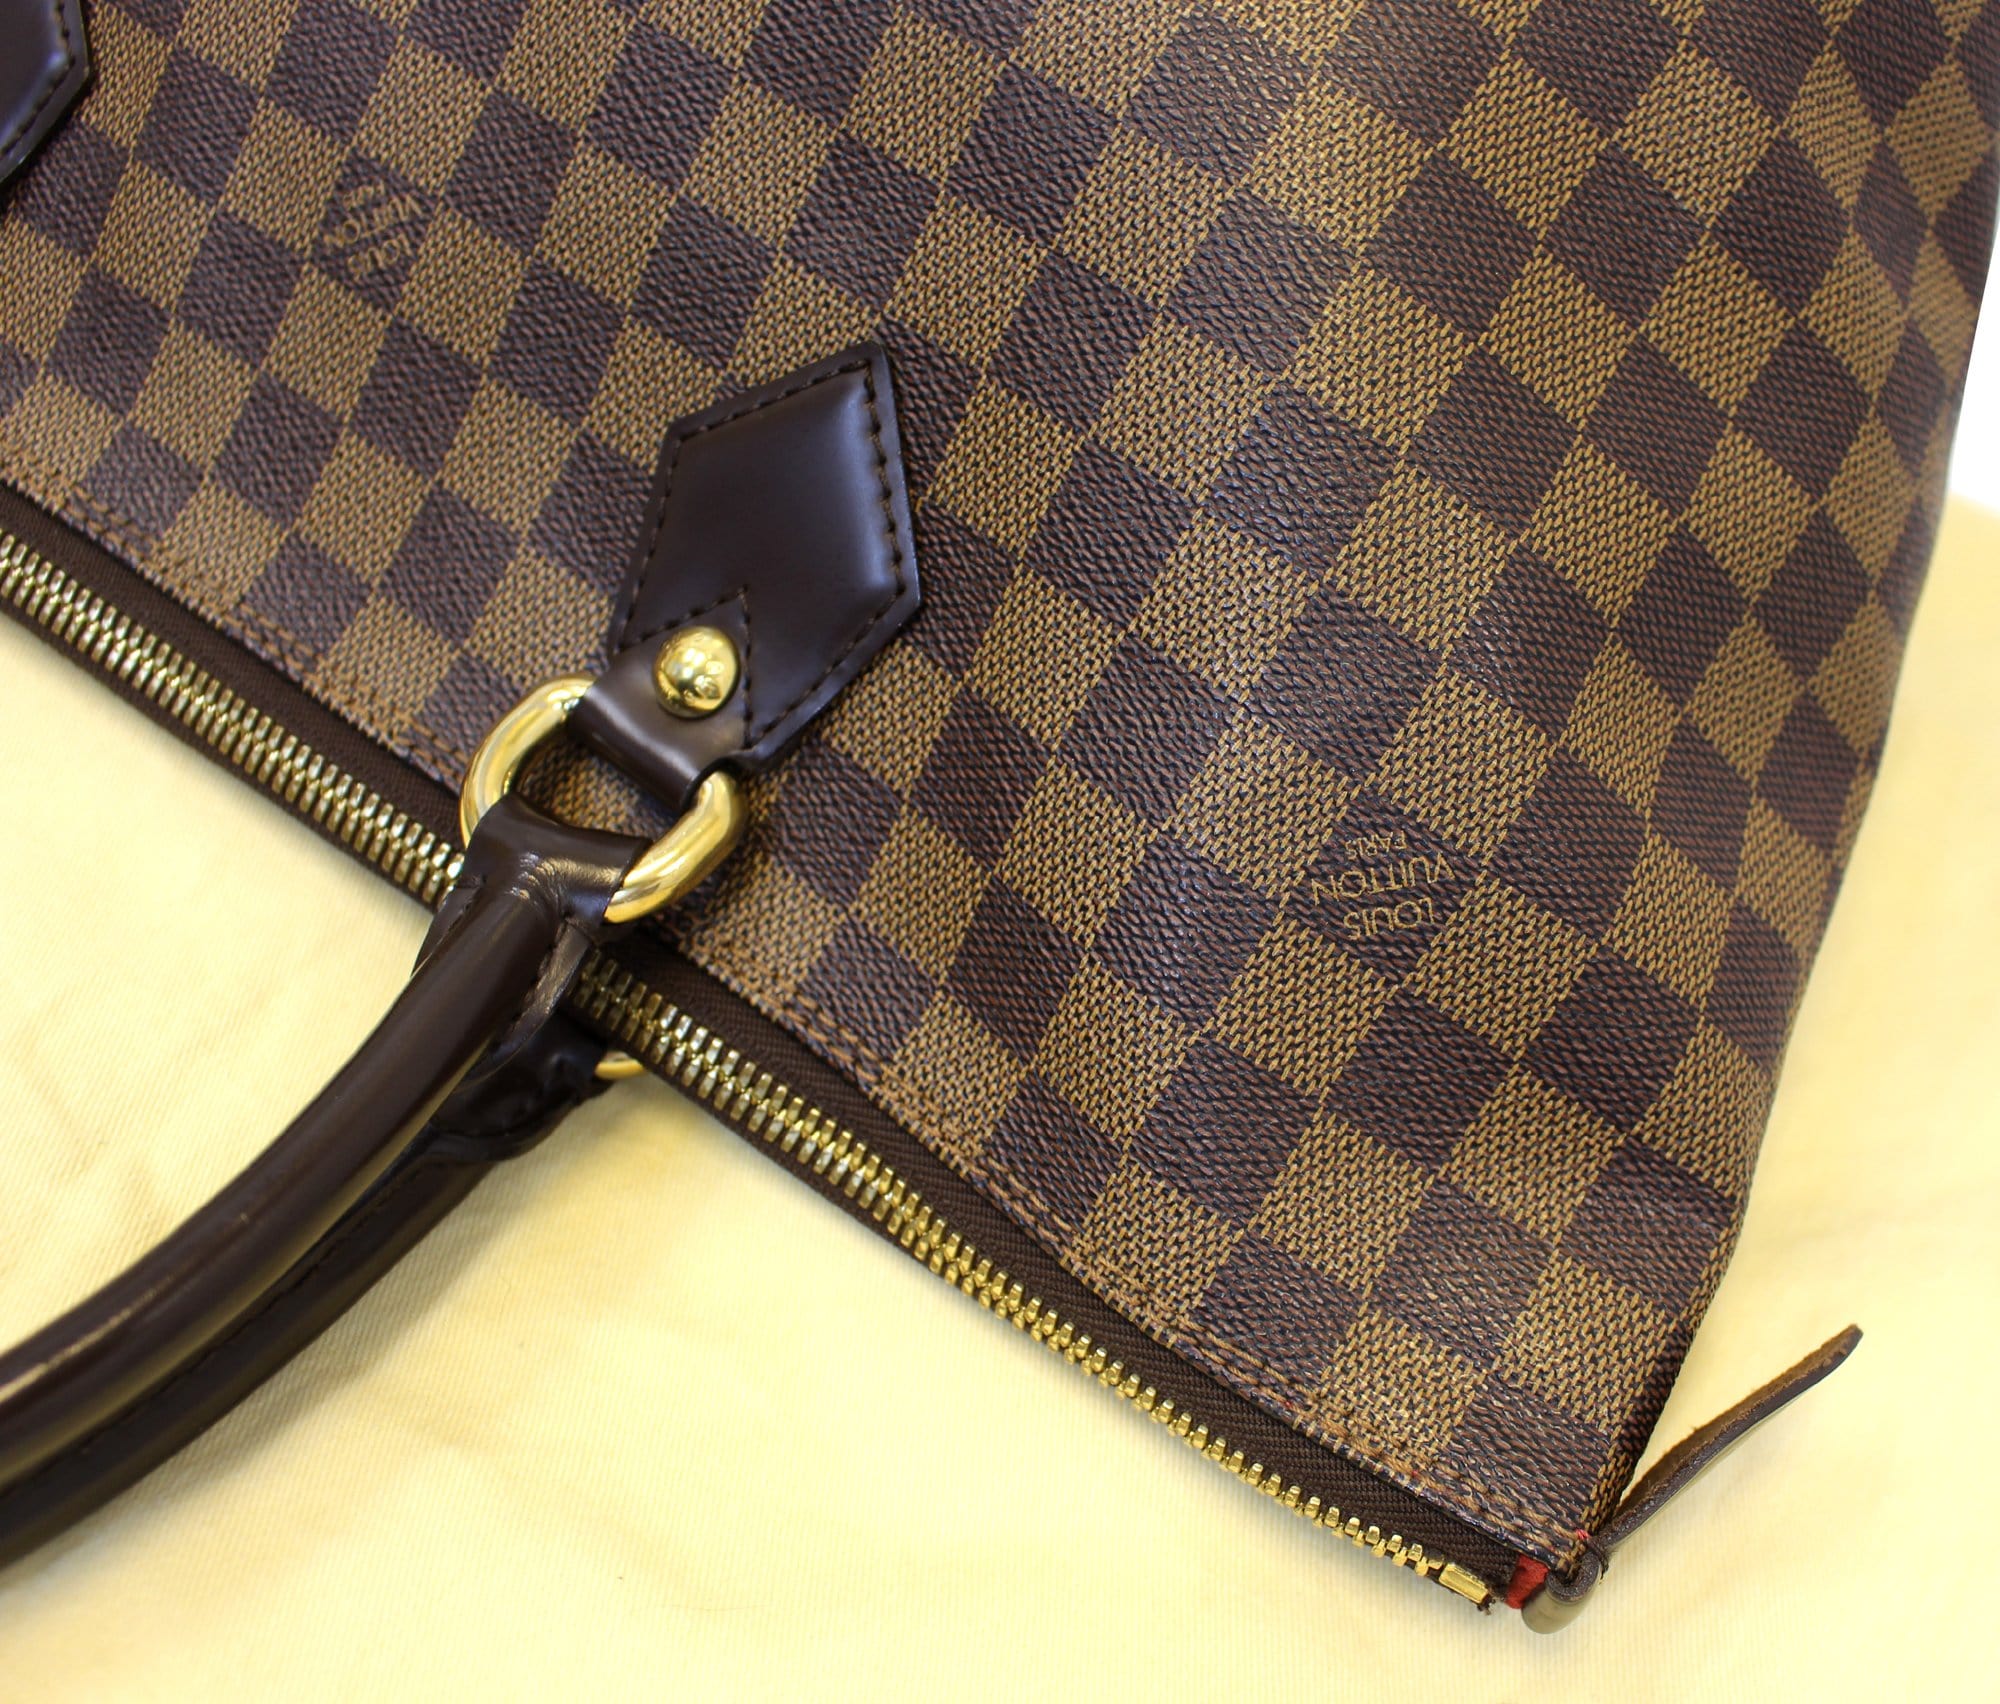 Louis Vuitton Saleya MM in Damier Azur Canvas and Vachetta Leather - Sindur  Style